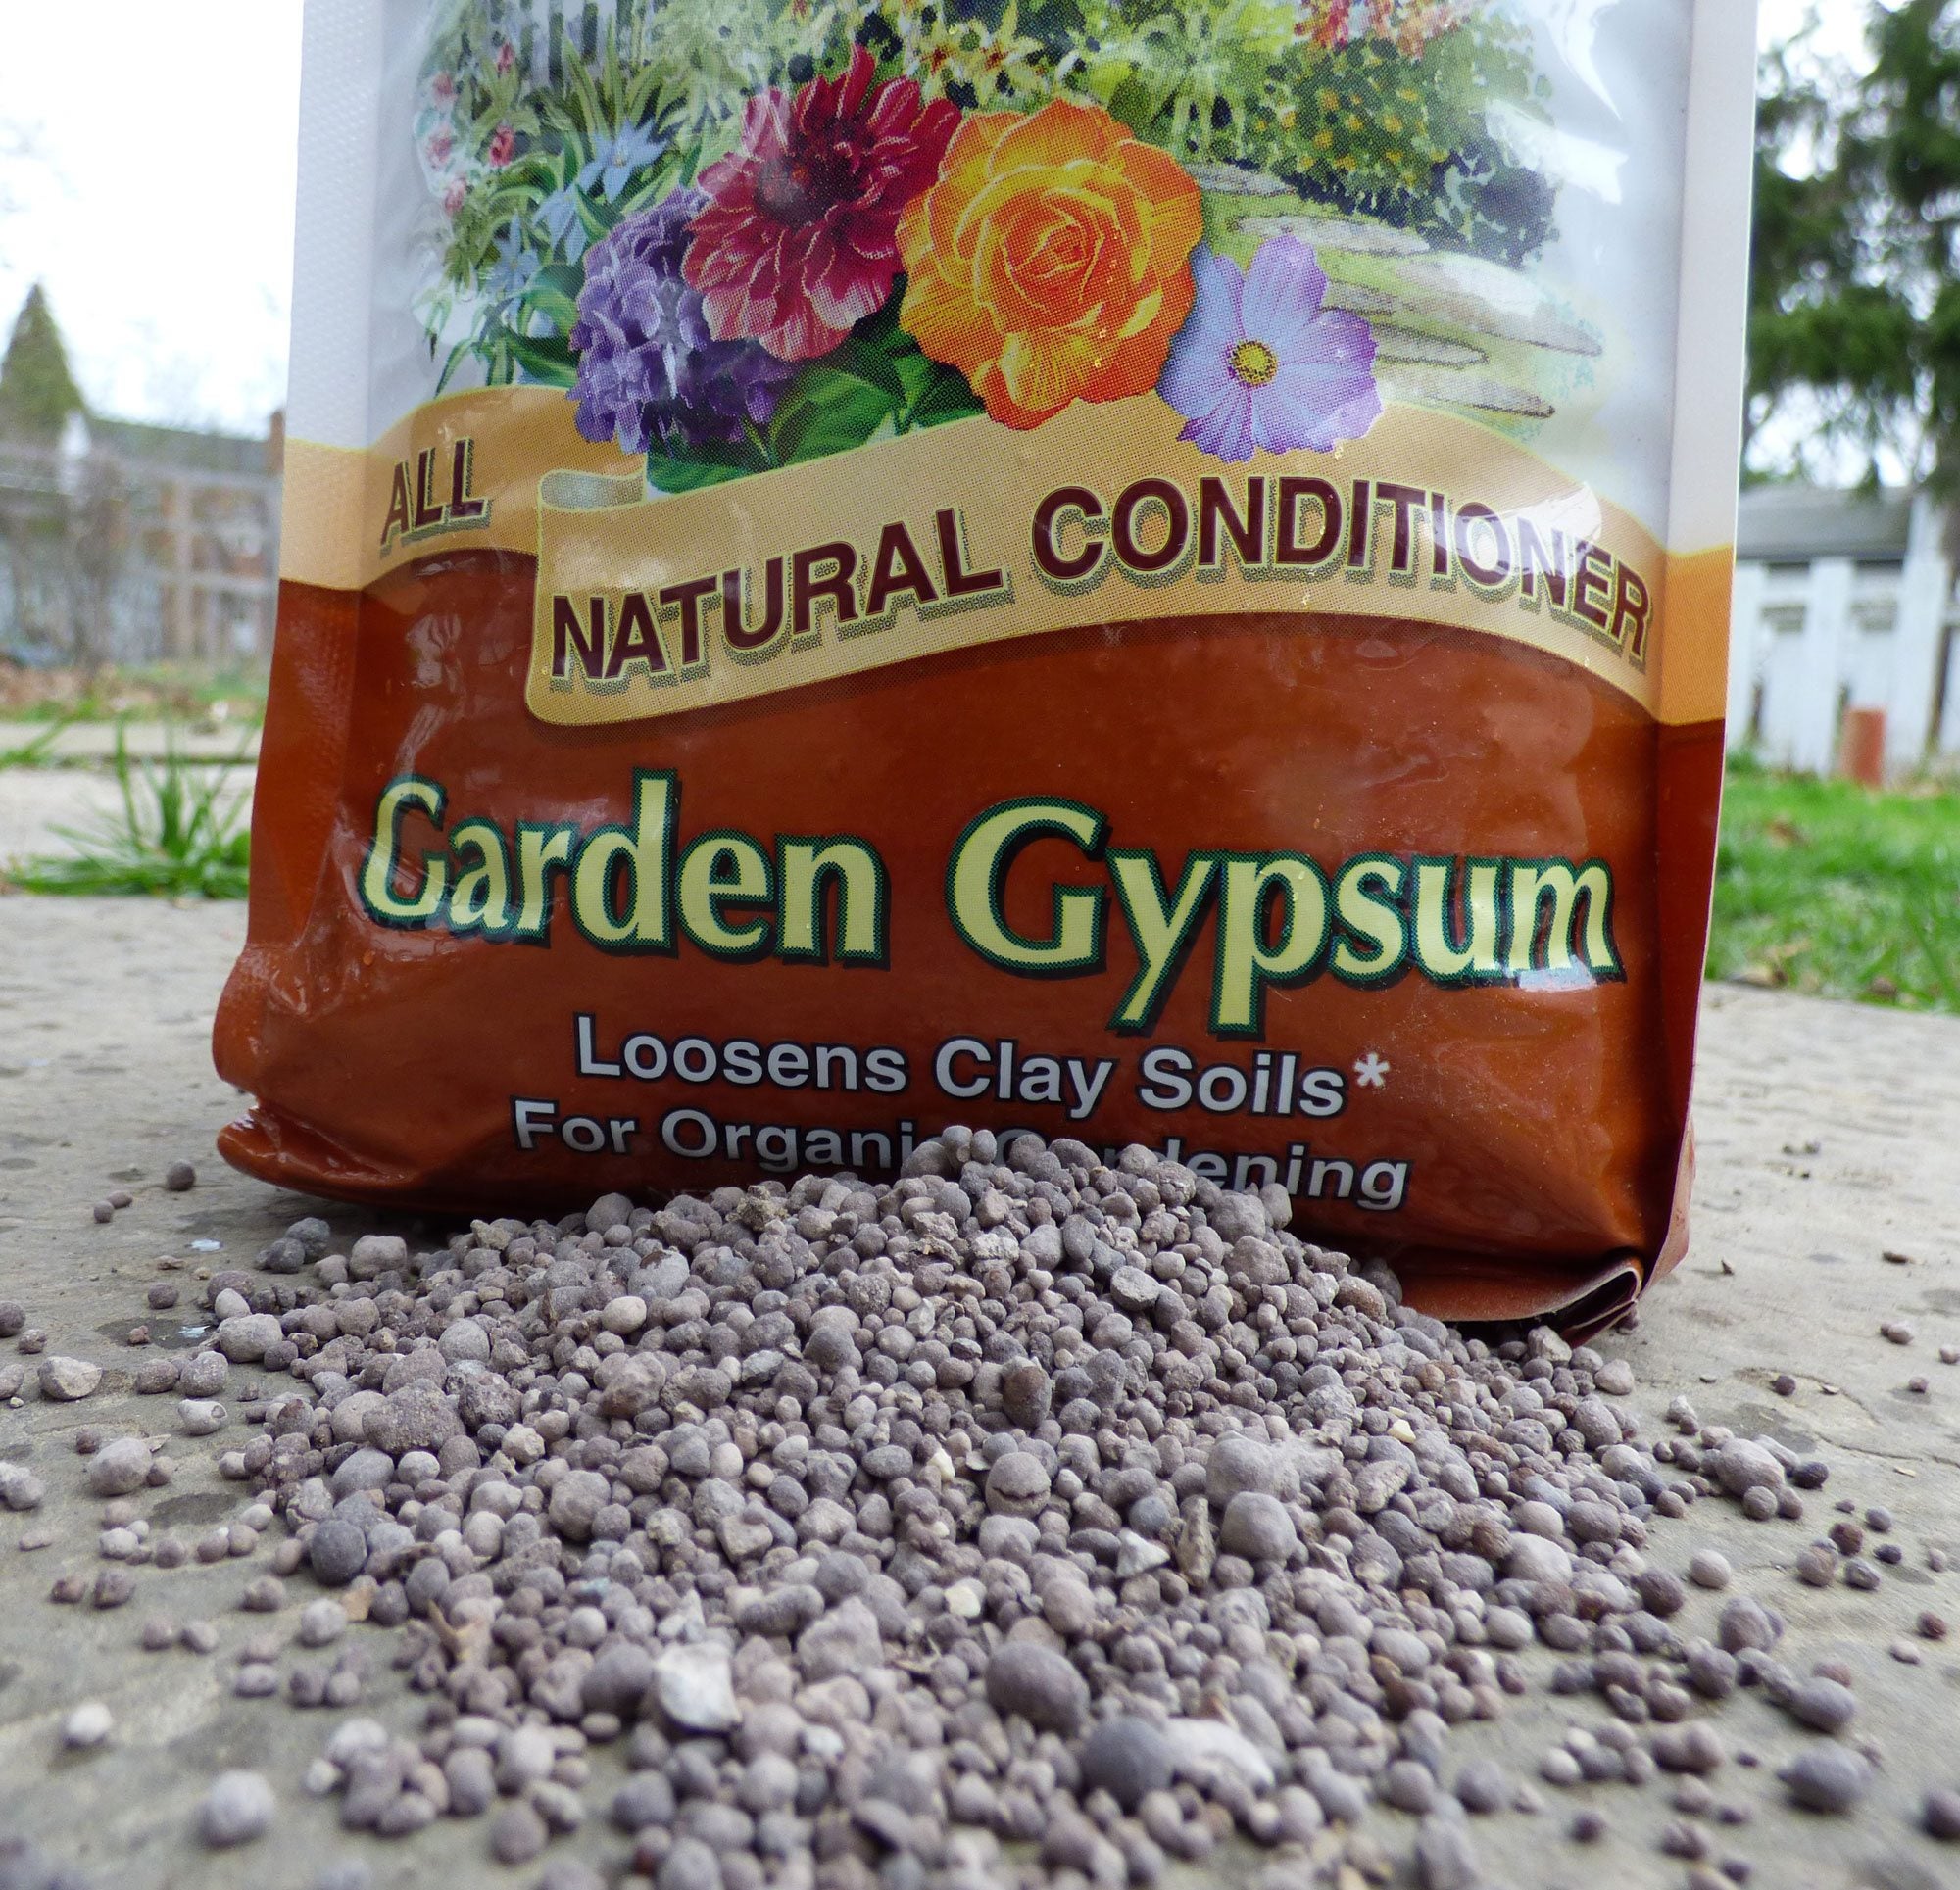 Garden Gypsum Information Is